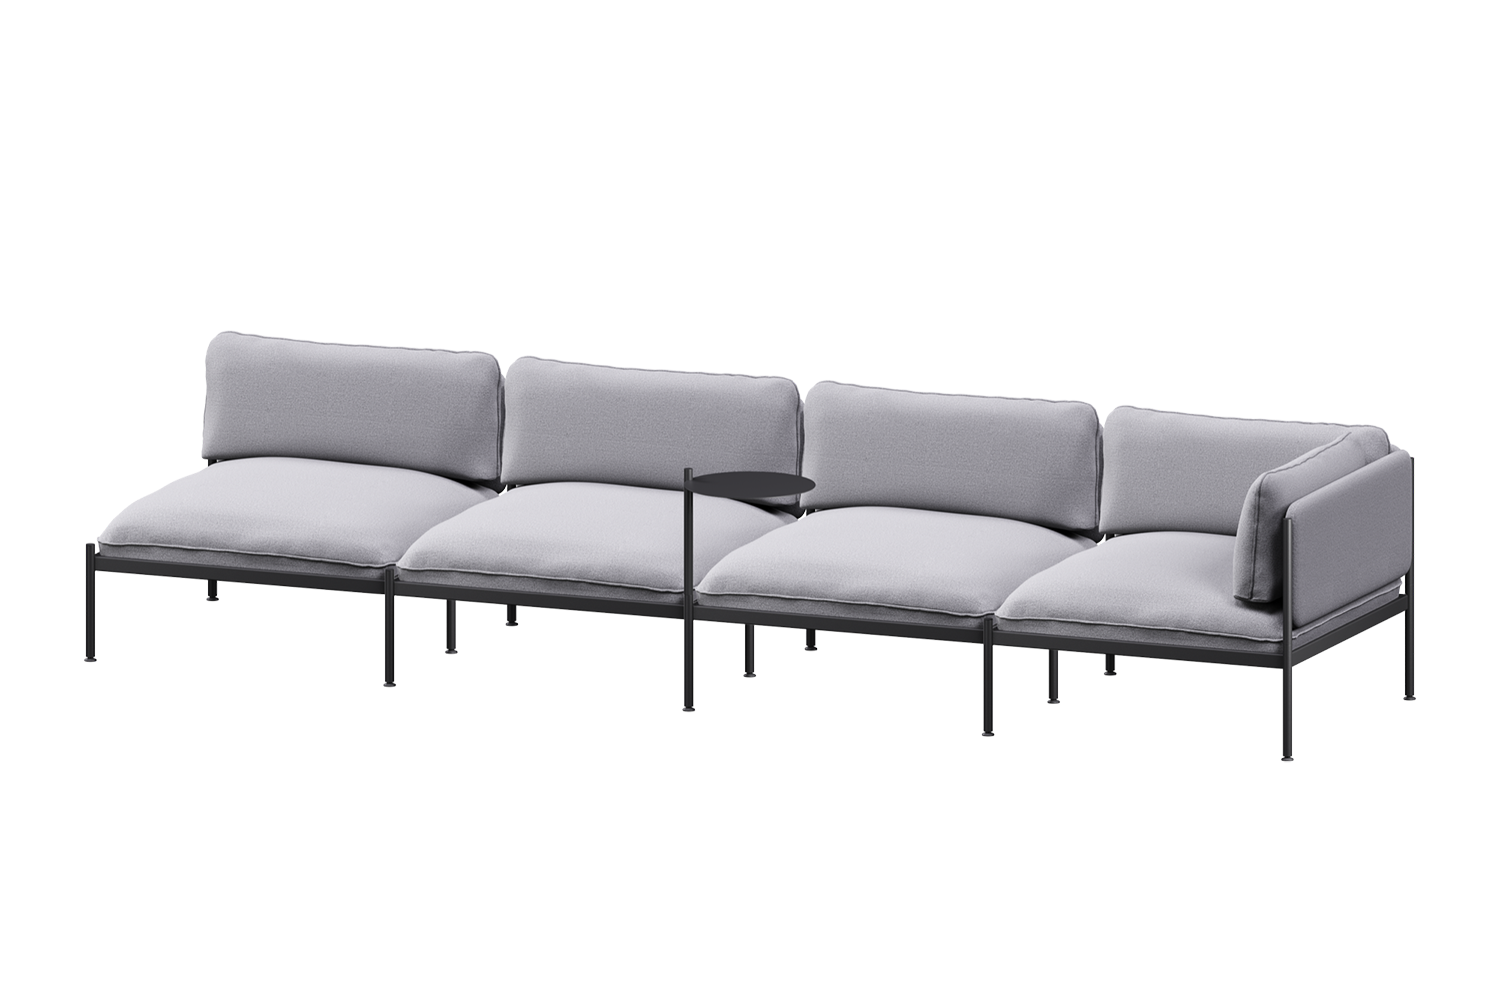 Toom Modular Sofa 4-Sitzer Konfiguration 1a in Pale Grey  präsentiert im Onlineshop von KAQTU Design AG. 4er Sofa ist von Noo.ma